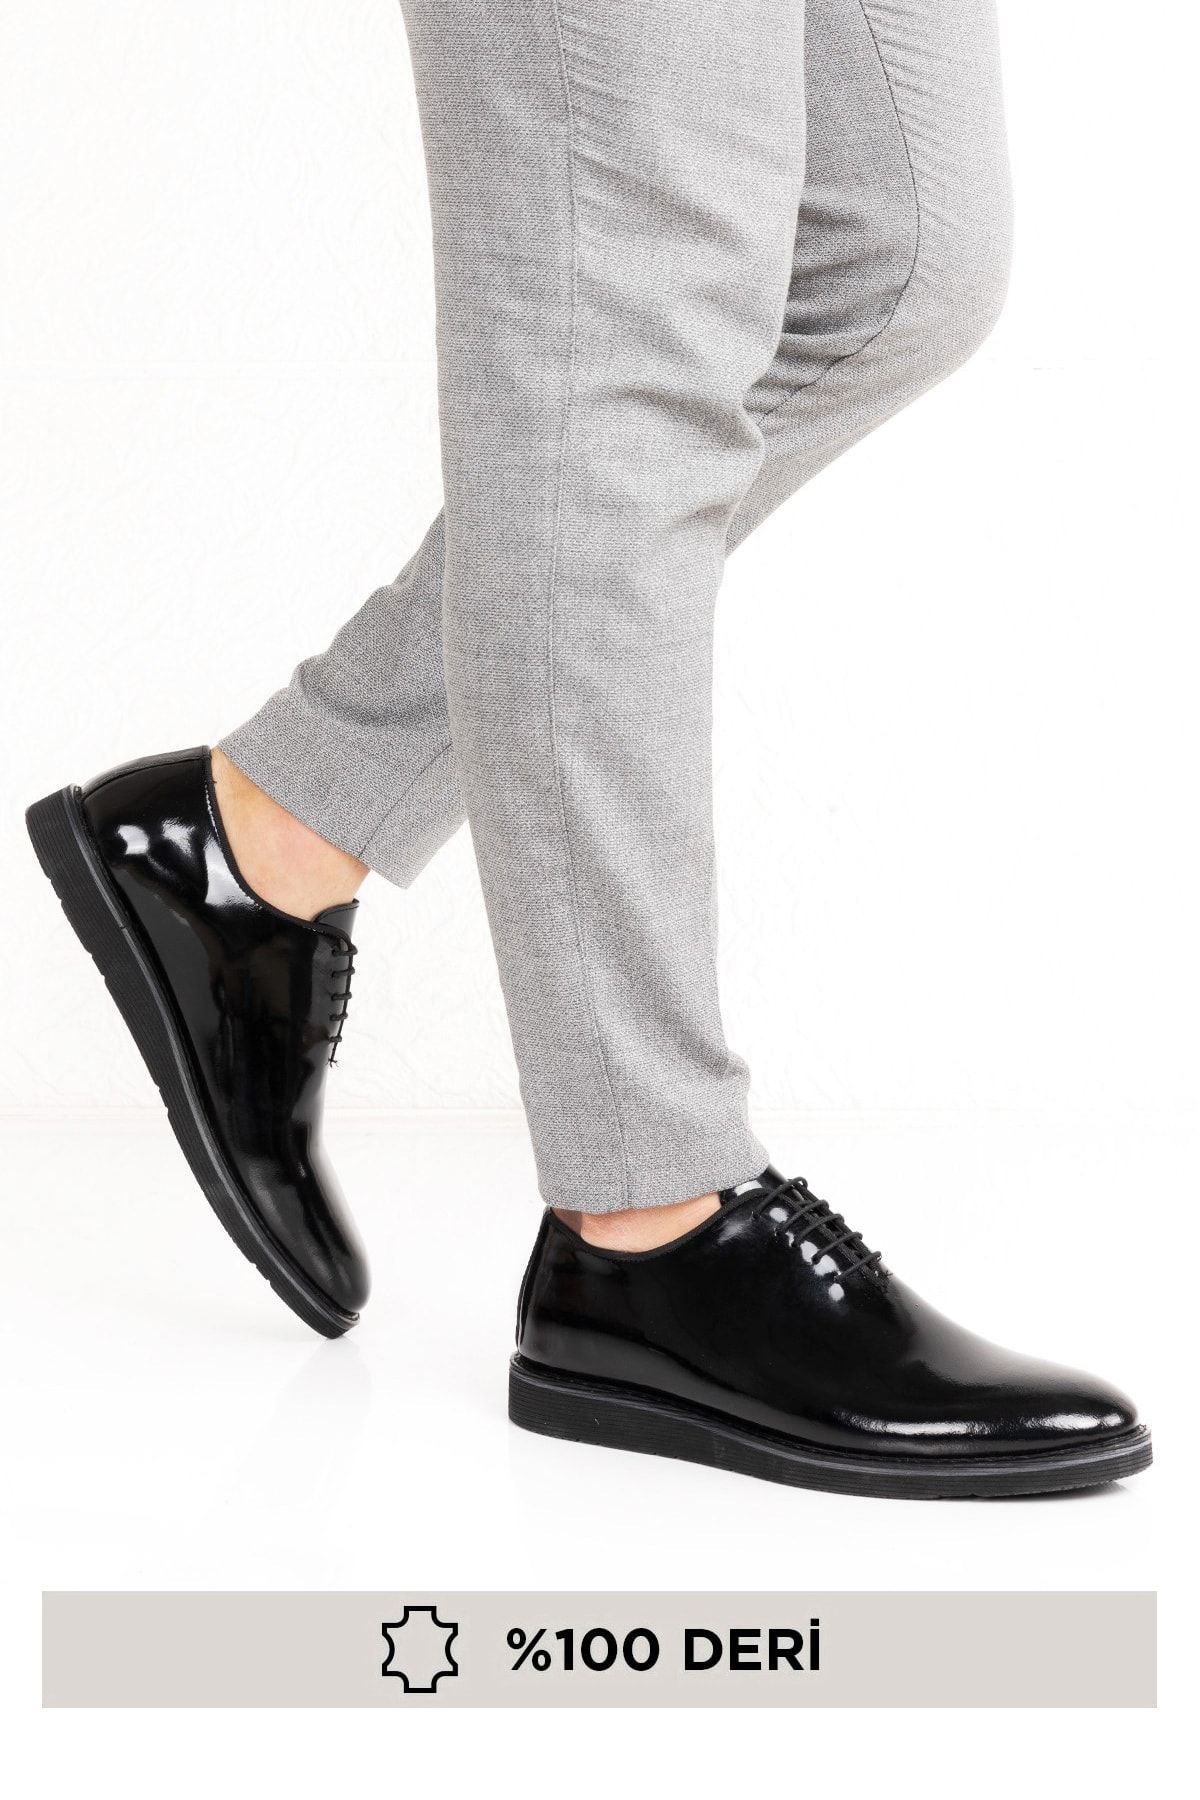 maximoda Erkek Siyah Hakiki Deri Takım Elbise ve Damatlık Klasik Ayakkabı